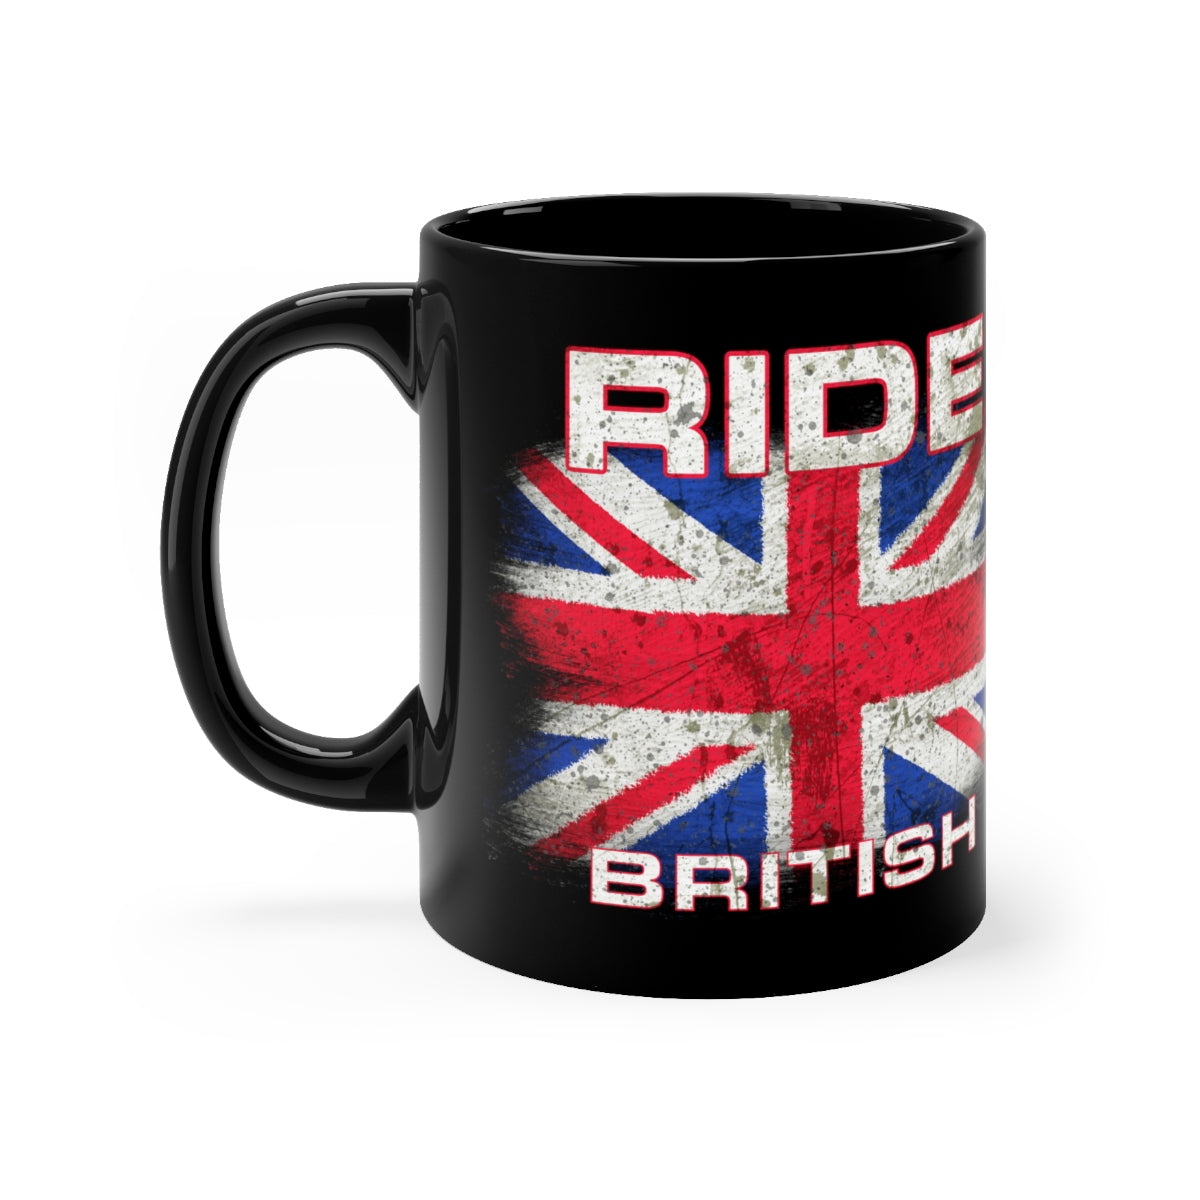 Ride British - Black mug 11oz